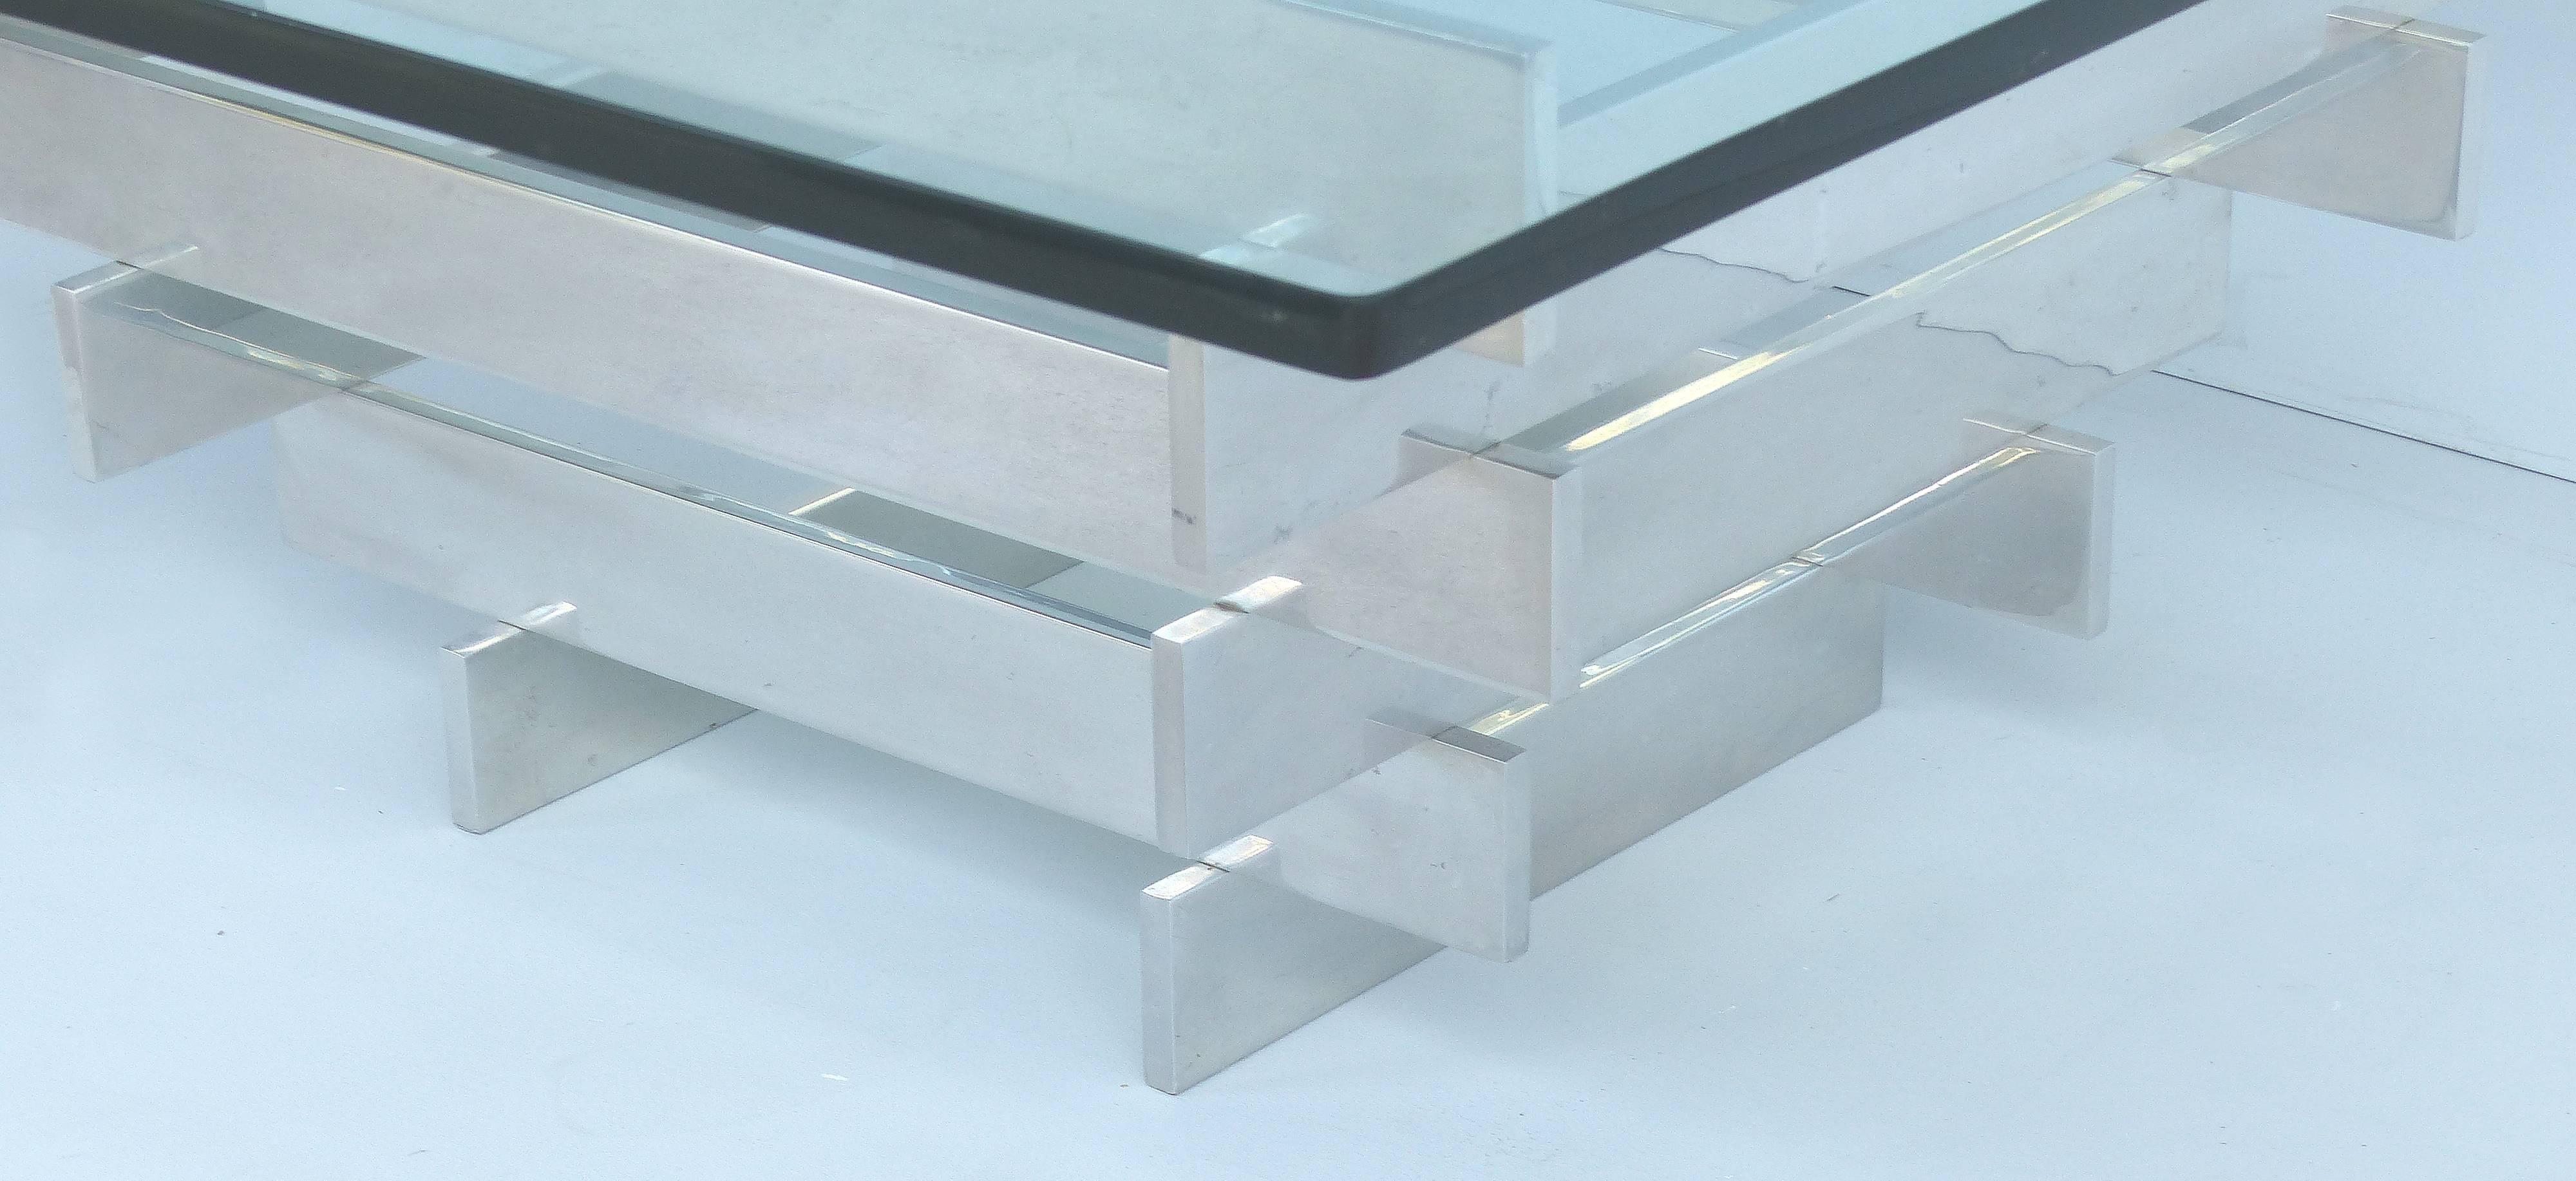 Paul Mayen Aluminium und Glas Couchtisch für Habitat

Angeboten für Ihre Betrachtung ist ein Paul Mayen Aluminium und Glas für Habitat gestapelt Chrom Couchtisch. Dieses Stück ist ein schönes Beispiel für die Arbeit des Designers in den 1970er